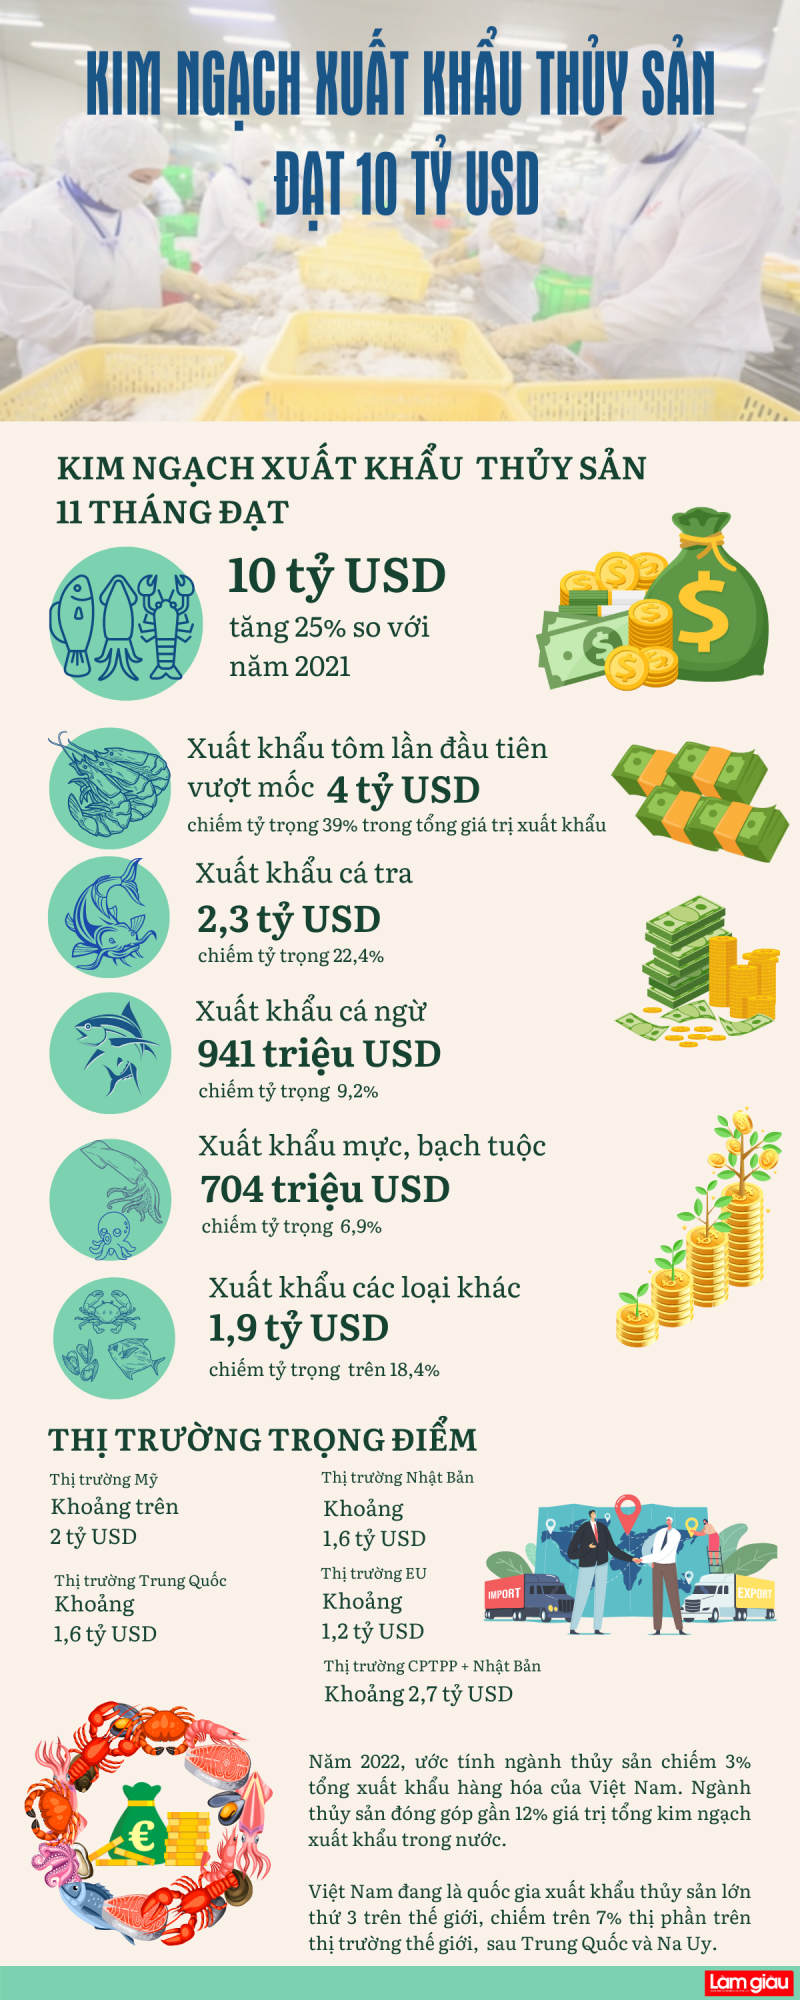 [Infographic]: Kim ngạch xuất khẩu thủy sản đạt 10 tỷ USD